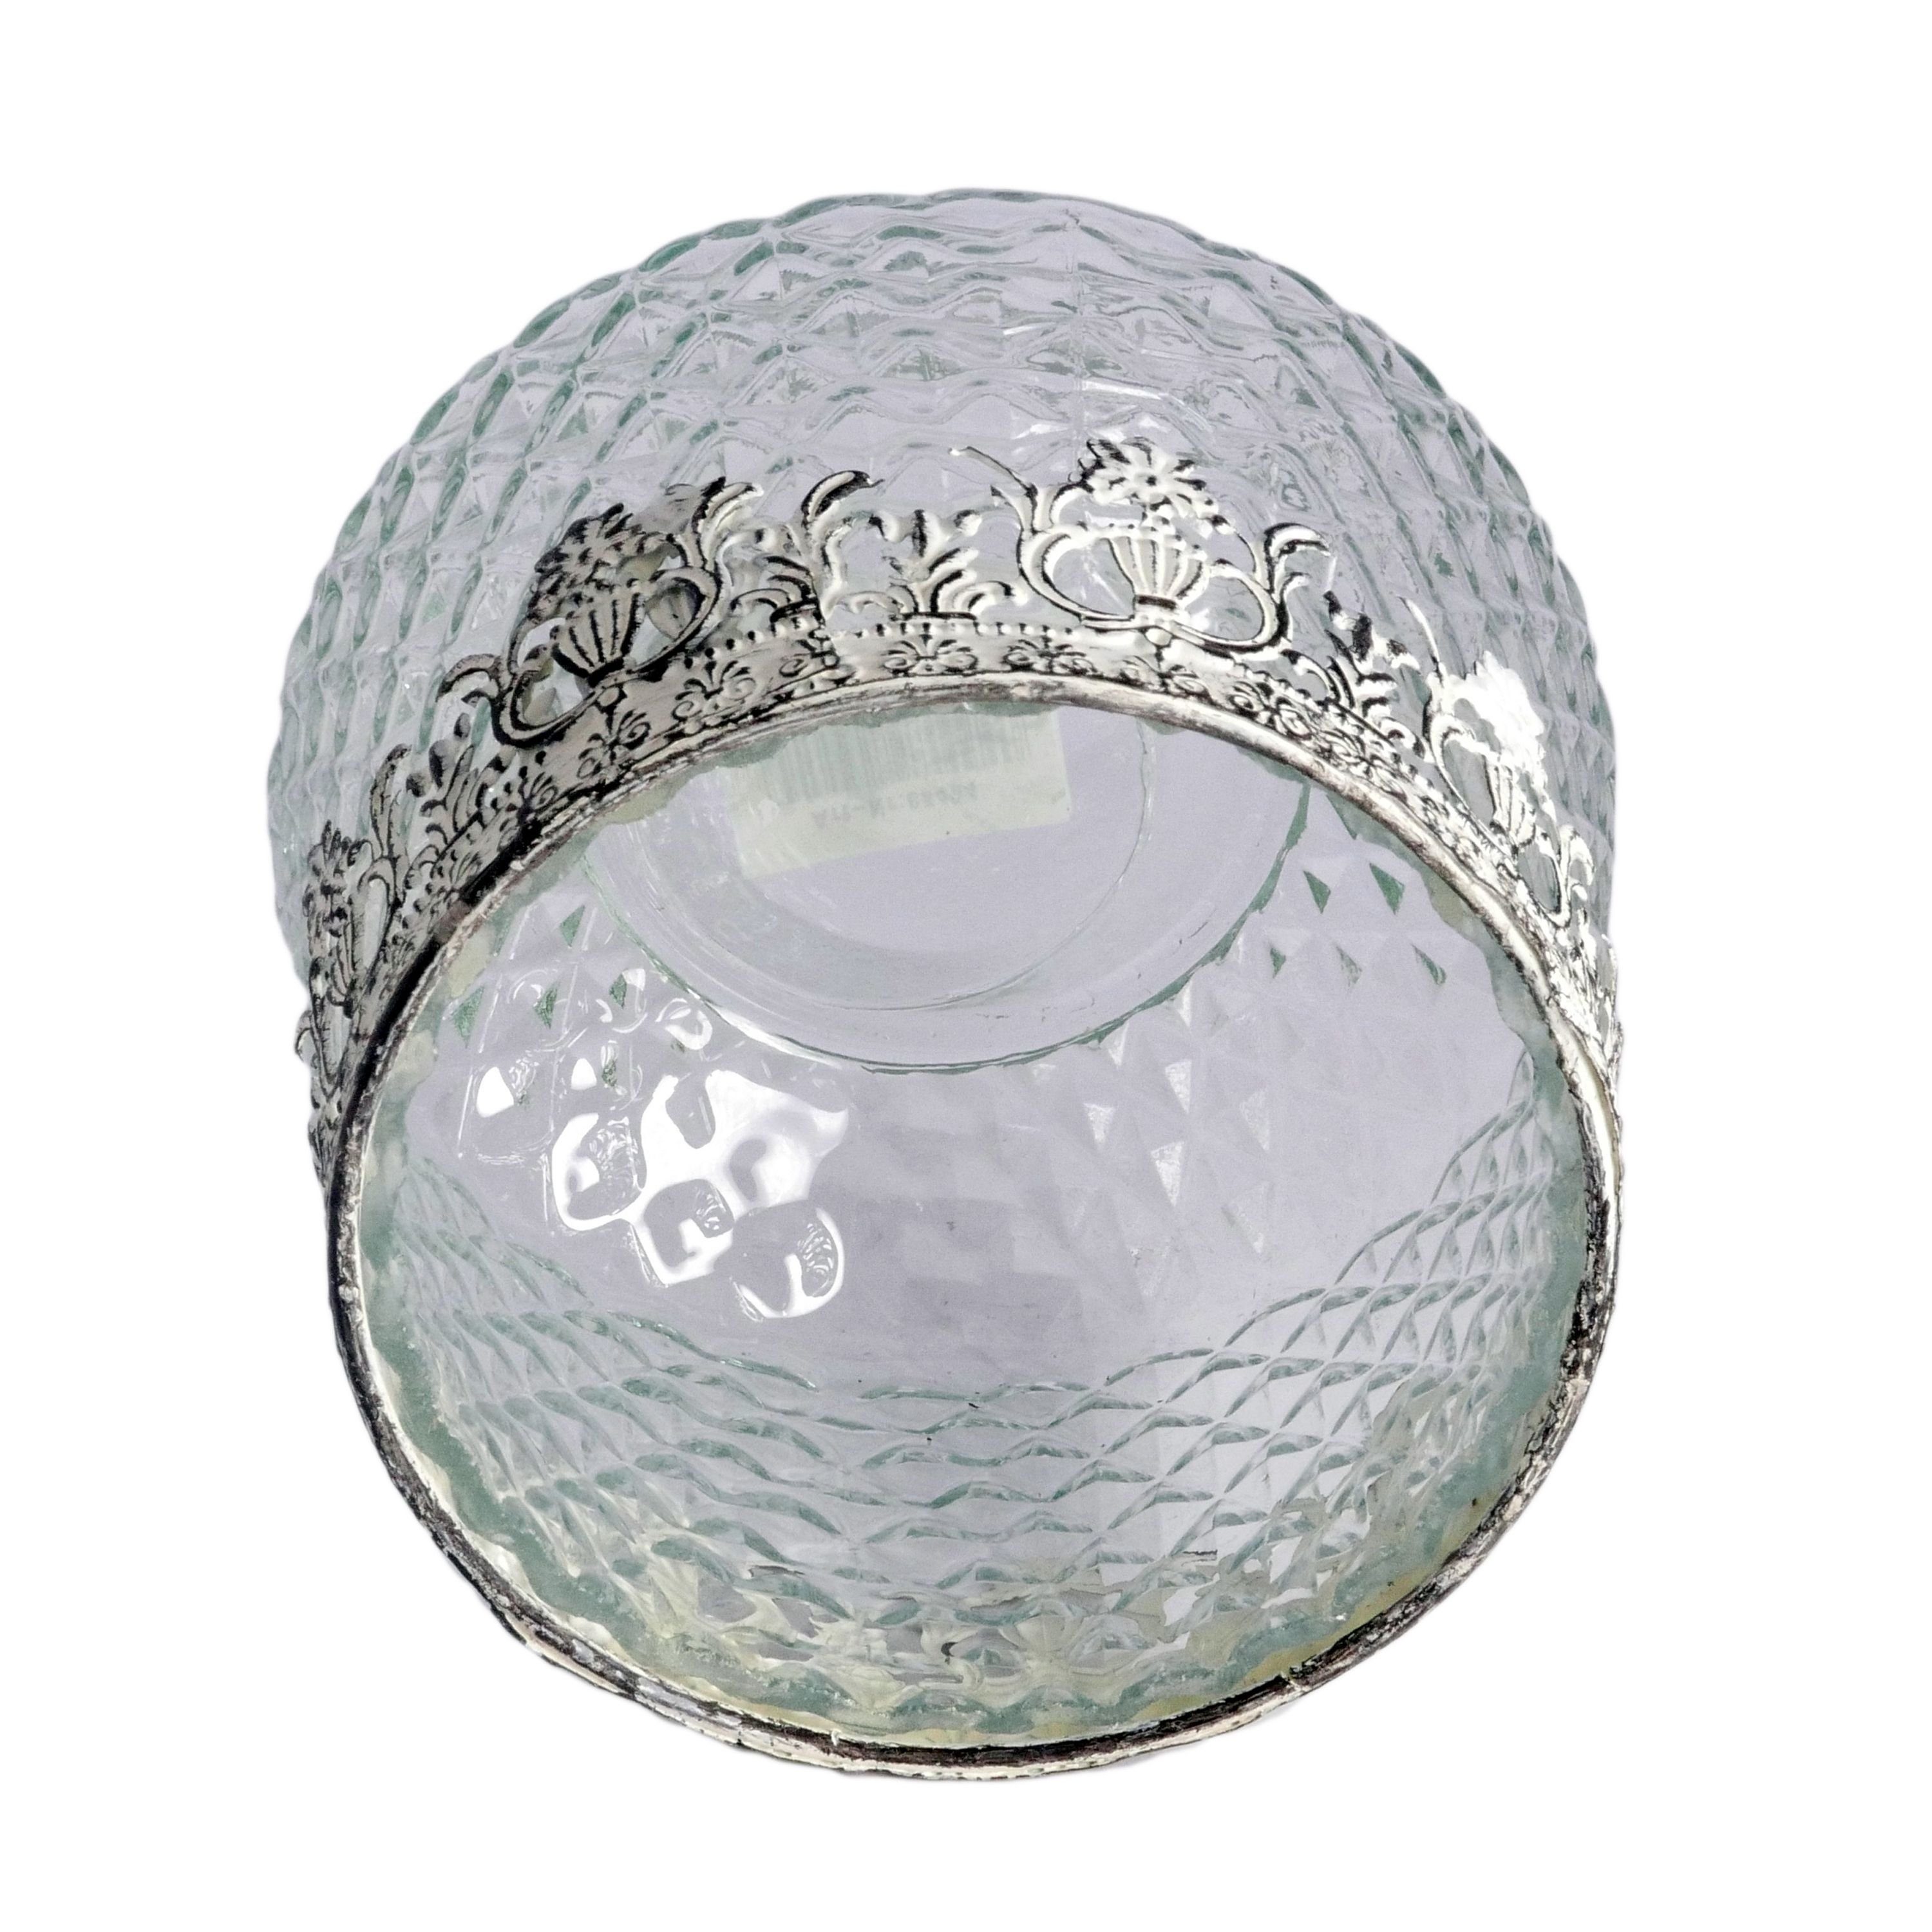 B&S Windlicht Teelichtglas Zierrand Metall